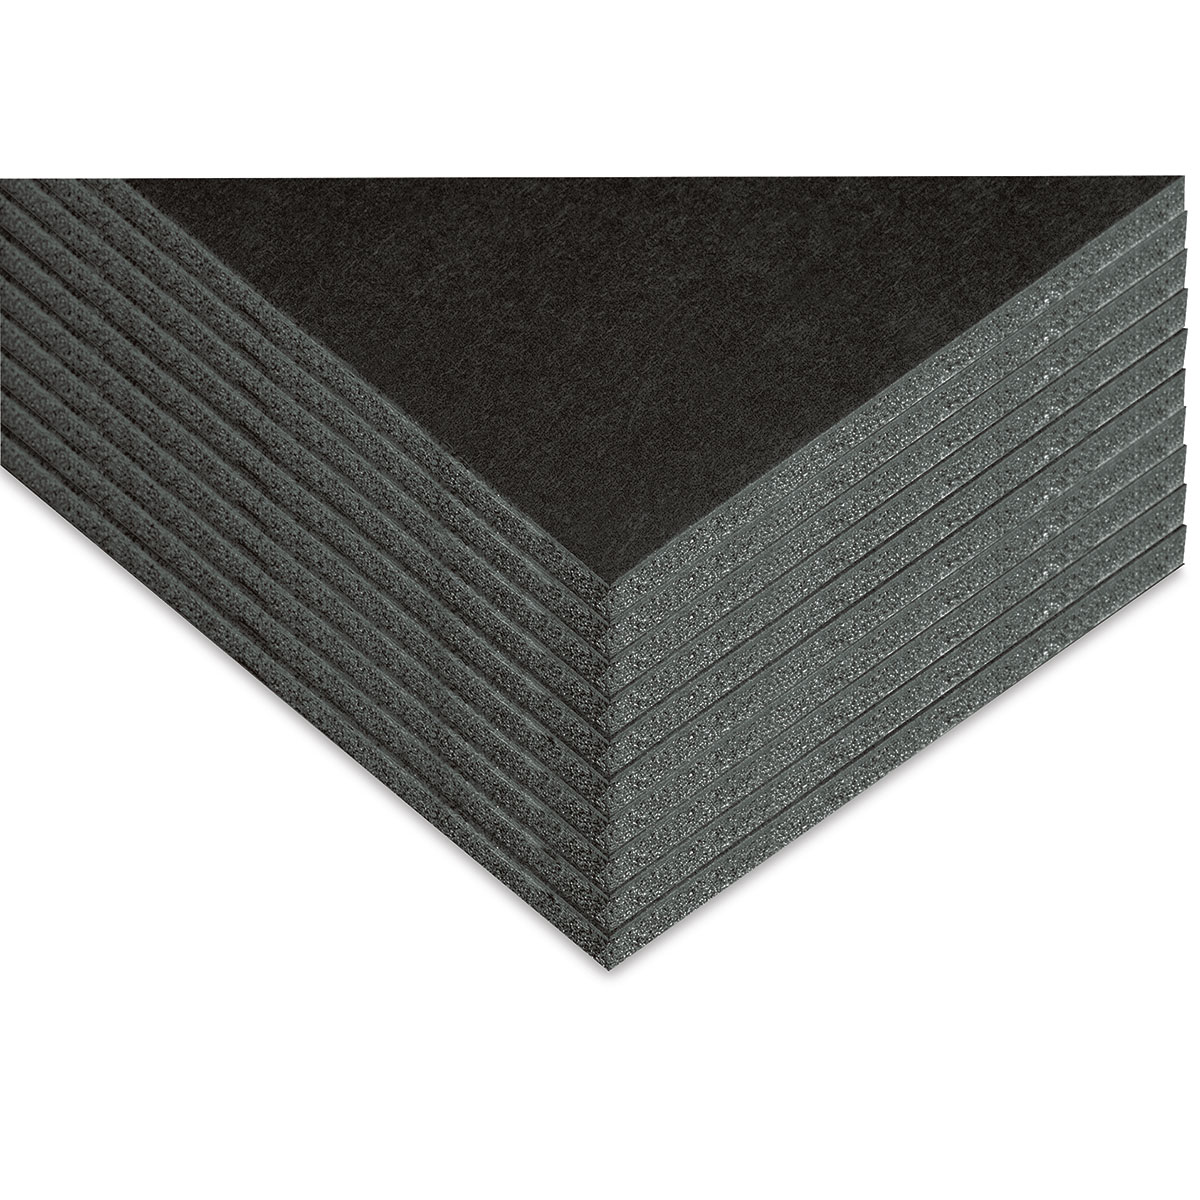 20 x 30 Black Core Foam Board